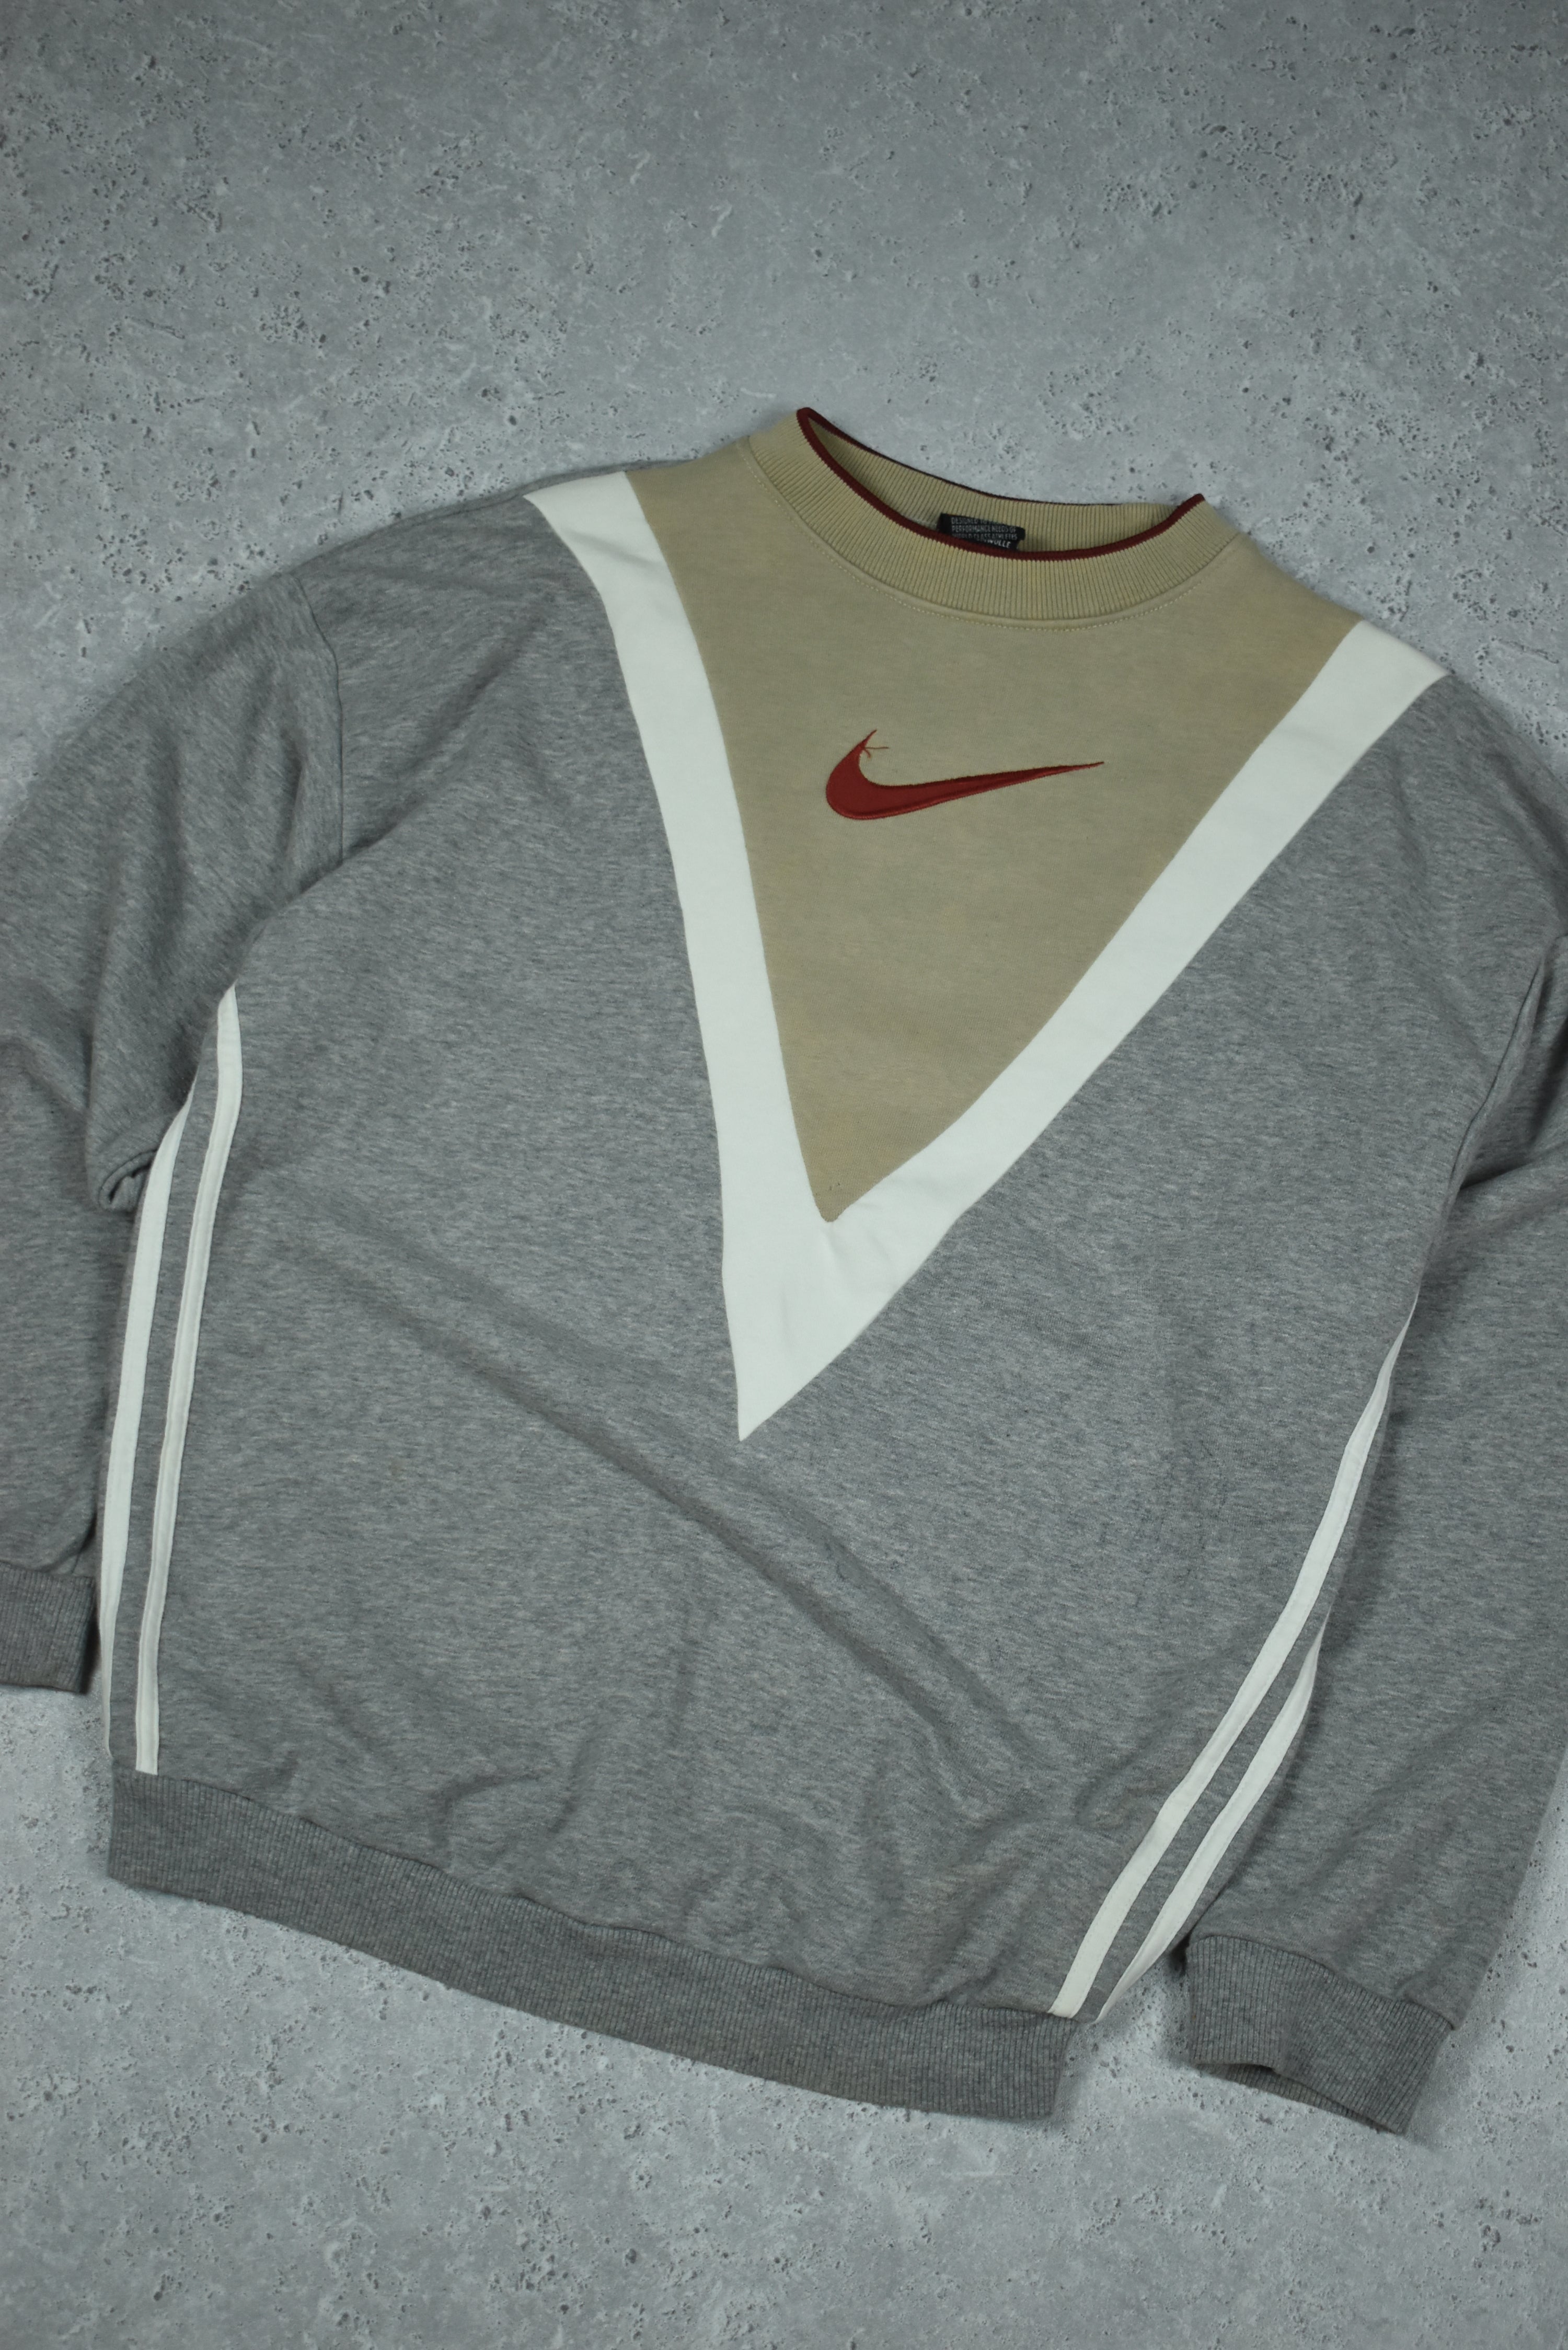 Vintage Nike Embroidered Rework Sweatshirt Medium